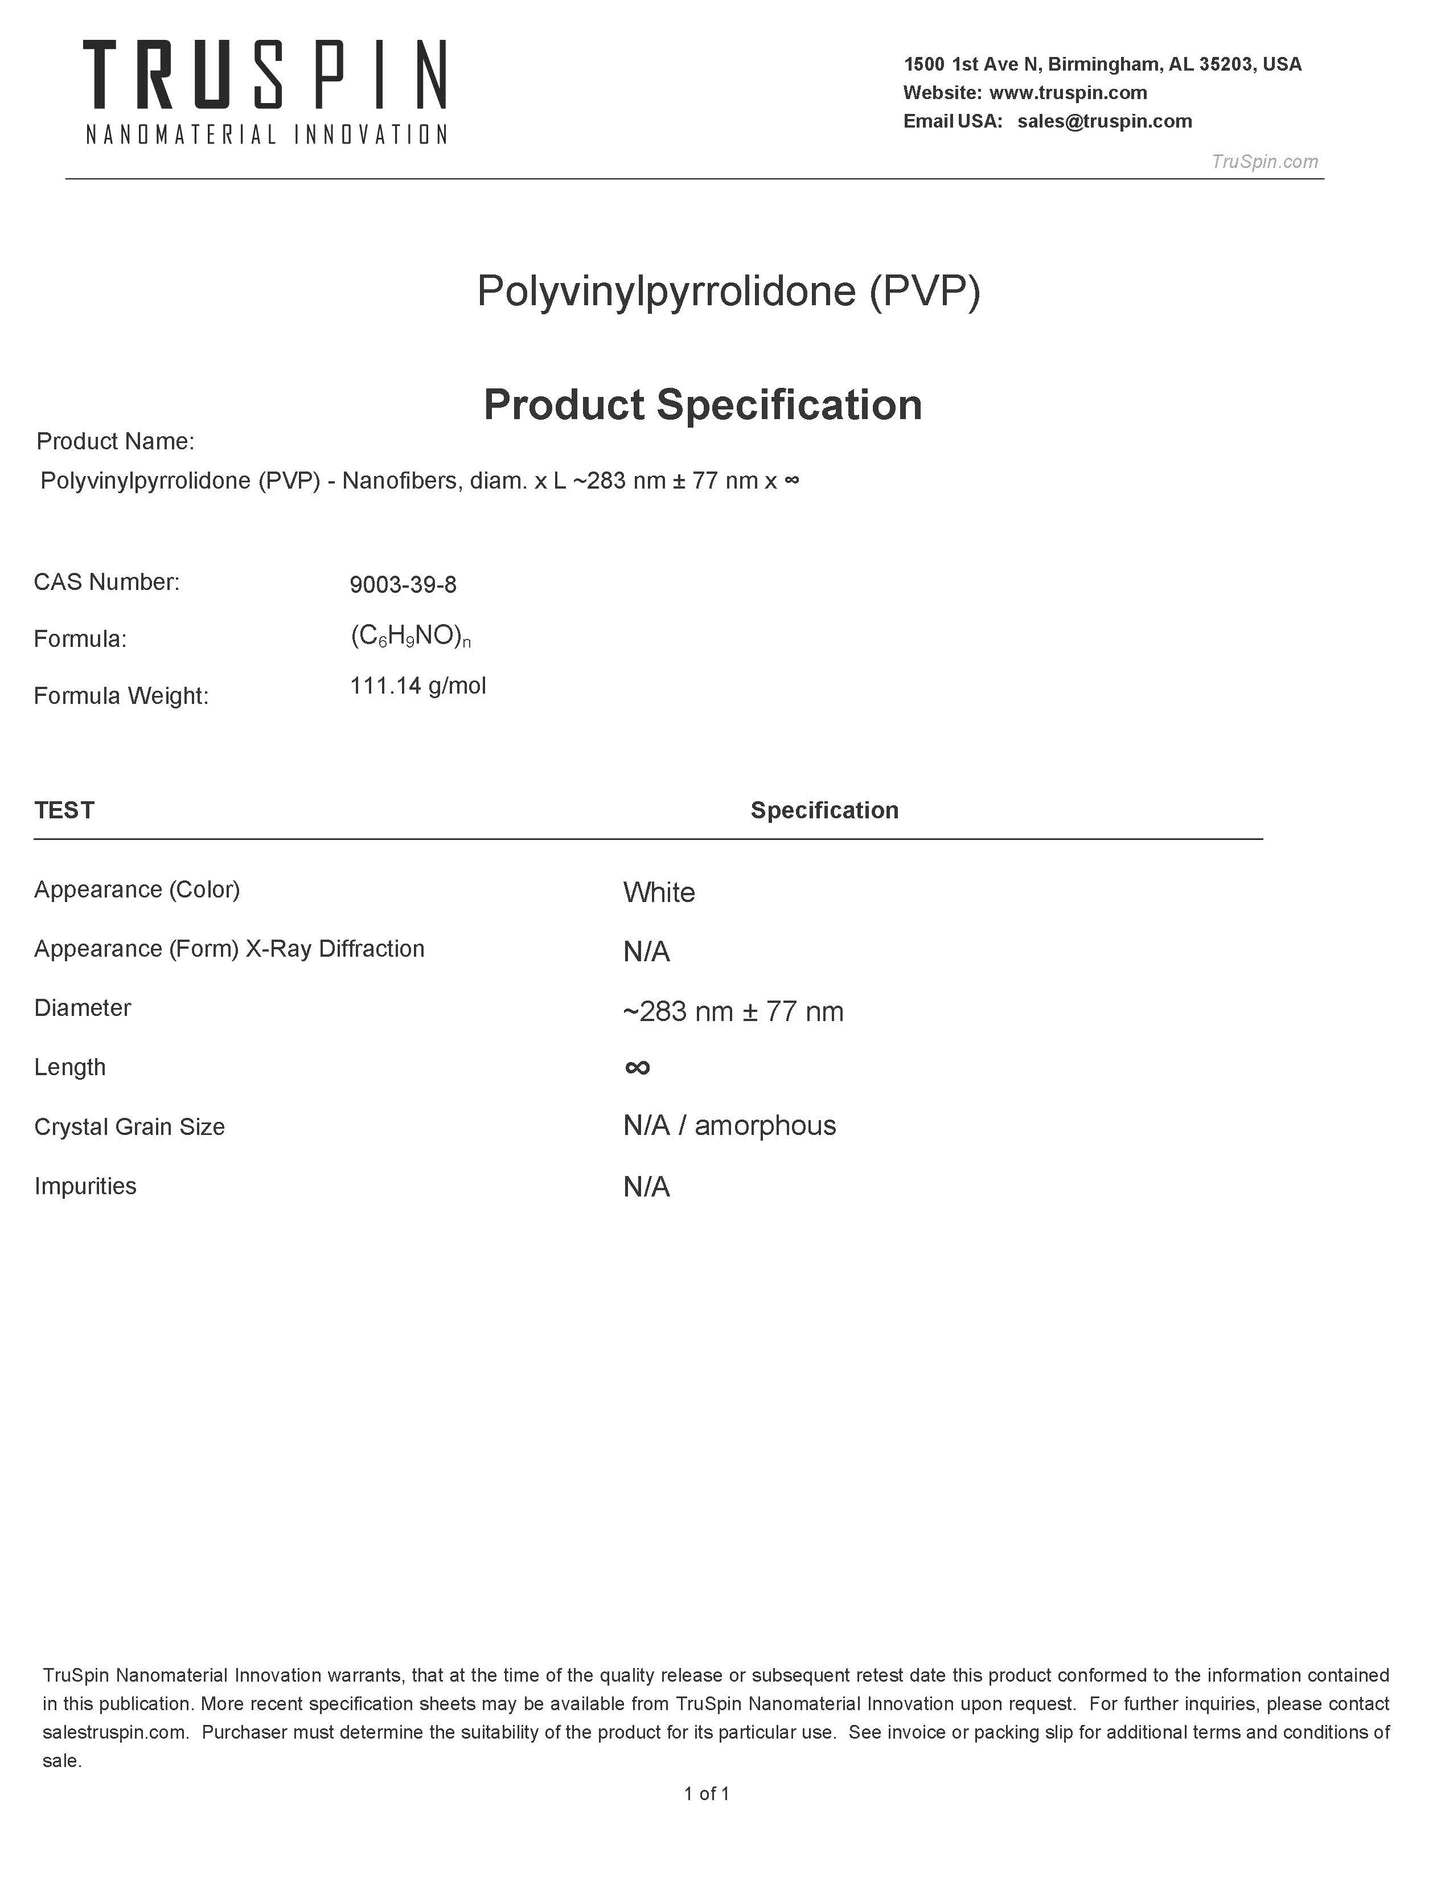 Polyvinylpyrrolidone (PVP) Nanofibers